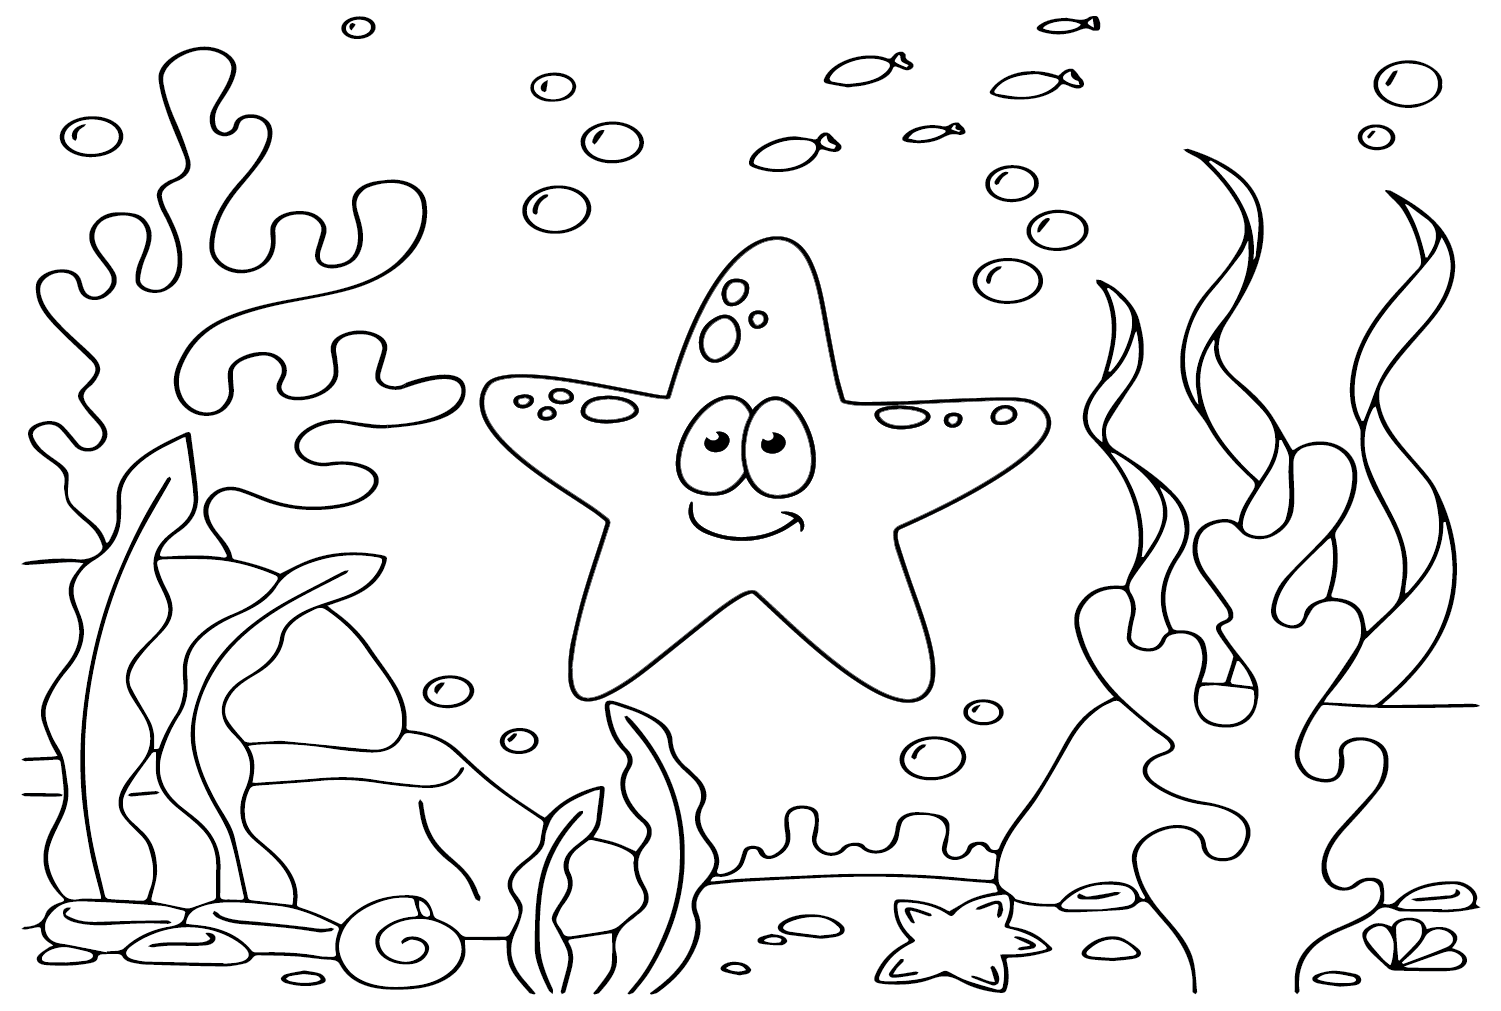 Printable Starfish from Starfish